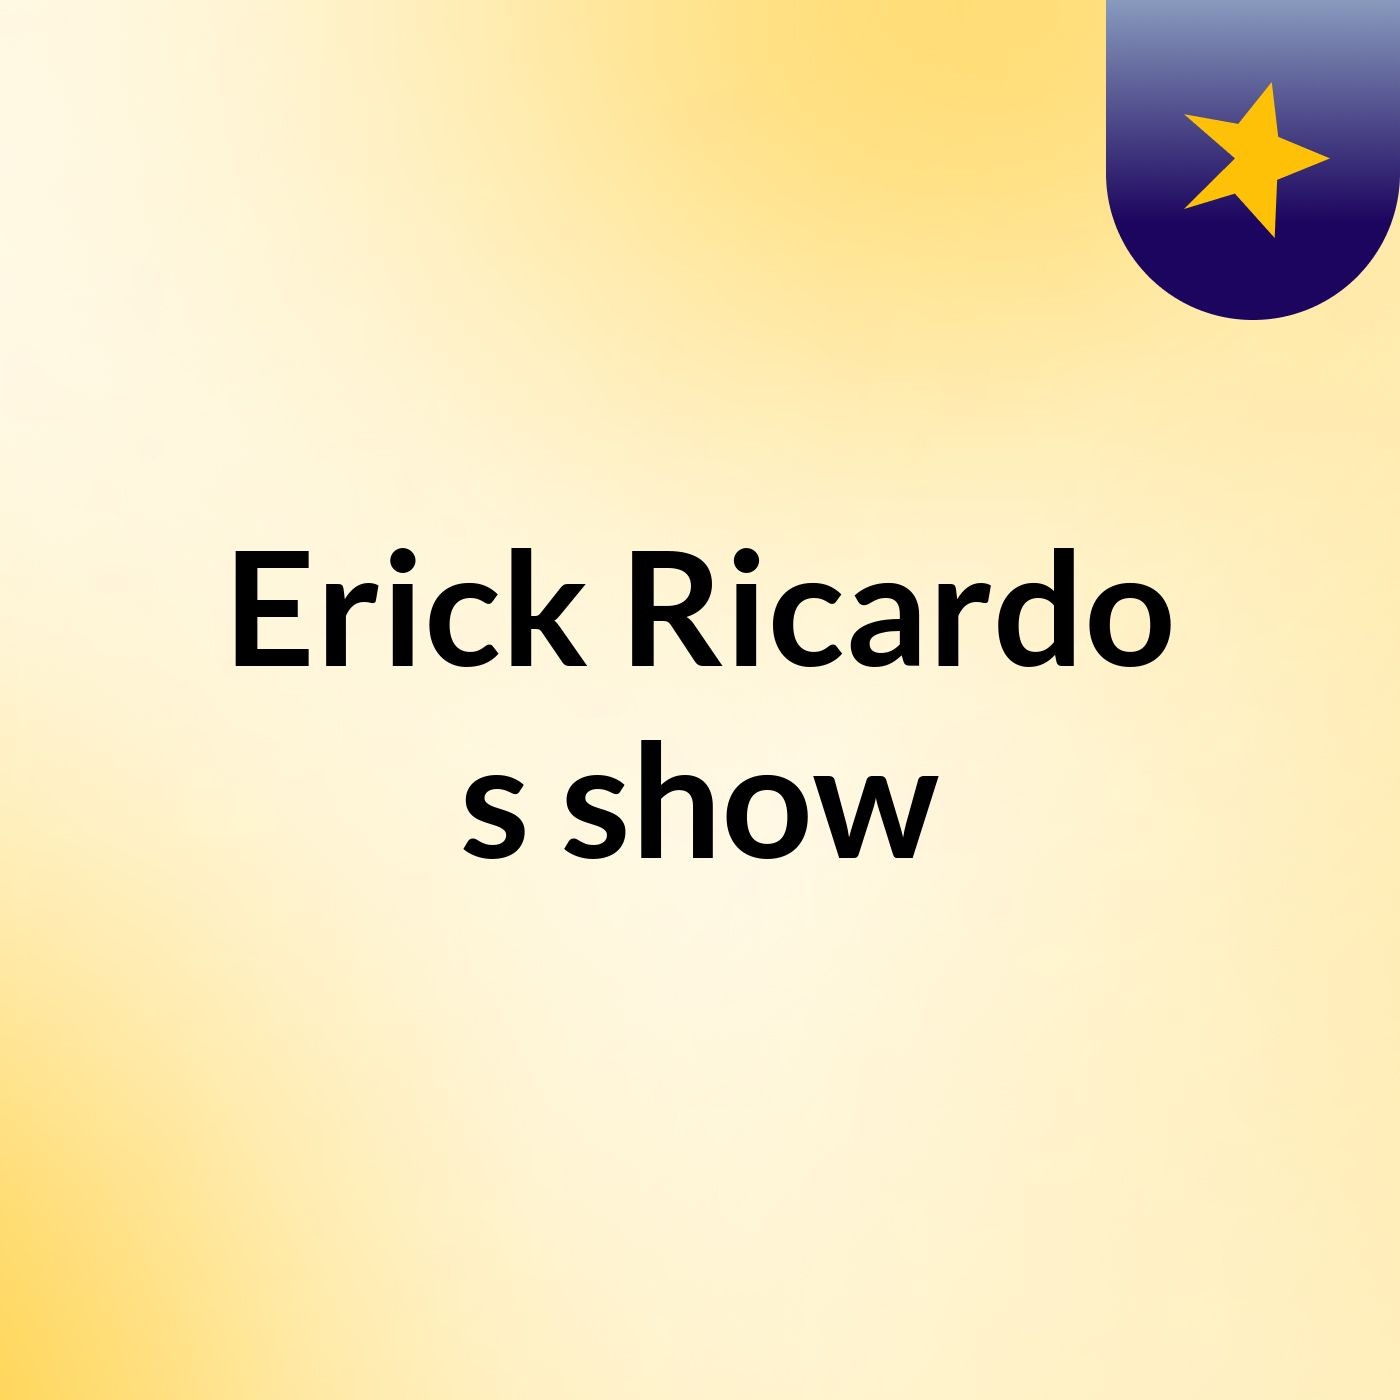 Erick Ricardo's show